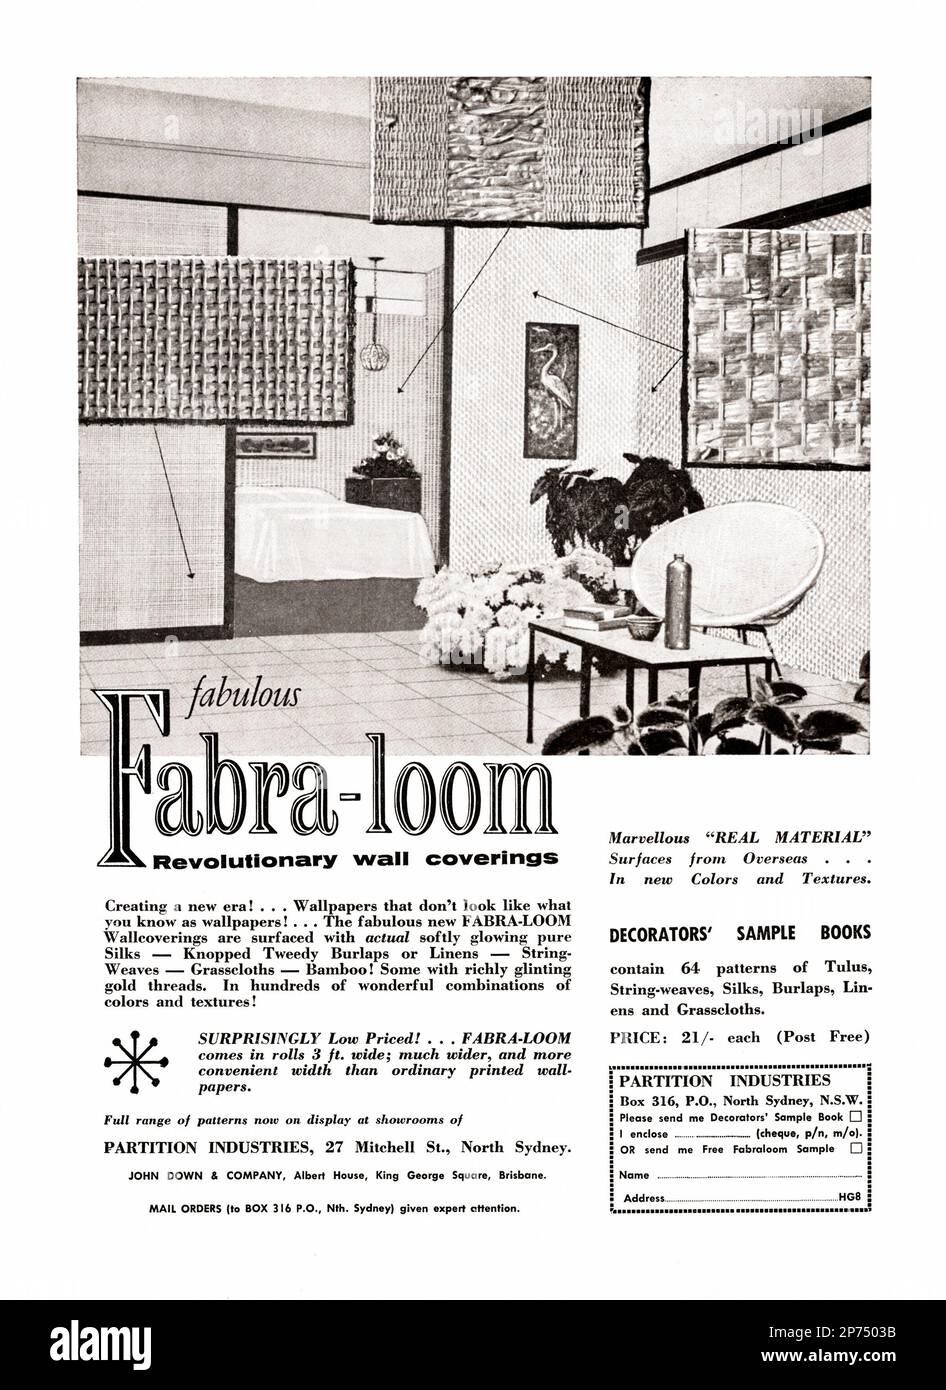 Une publicité de 1960s pour un revêtement mural Fabra-Loom – elle est apparue dans un magazine australien en 1962. Les revêtements muraux ont des surfaces texturées et comprennent de la soie, du lin, du toile de jute et du bambou en utilisant des fils de couleurs, y compris l'or. Ils ont été exposés dans les salles d'exposition de partition Industries à North Sydney et Brisbane et également disponibles dans un exemple de livre par correspondance – graphiques millésimés de dix-neuf-années. Banque D'Images